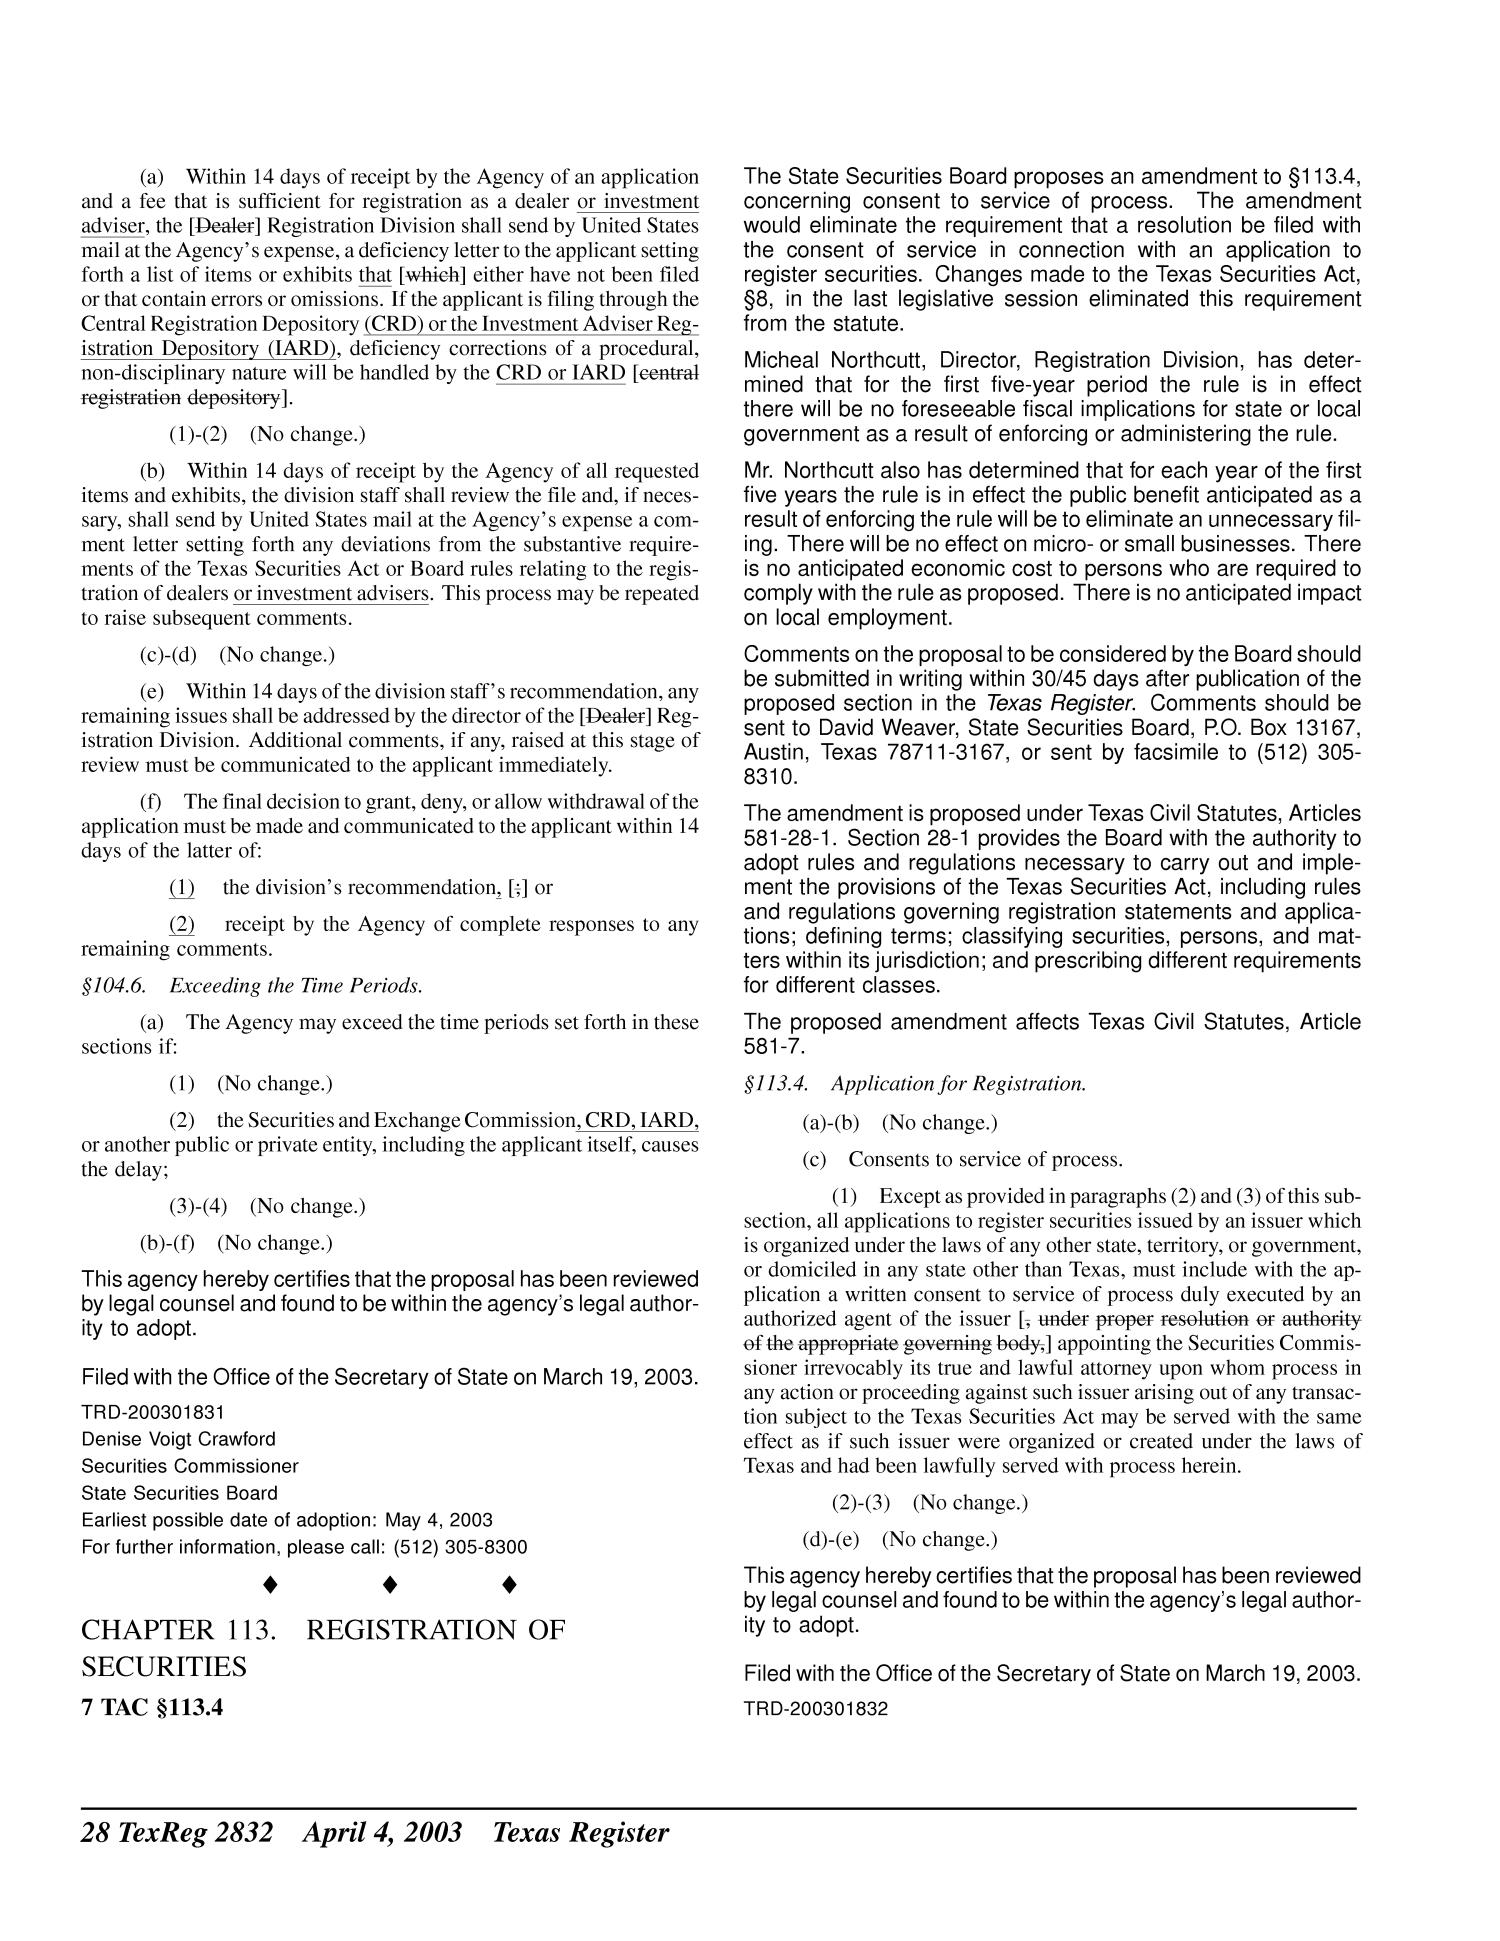 Texas Register, Volume 28, Number 14, Pages 2821-2988, April 4, 2003
                                                
                                                    2832
                                                